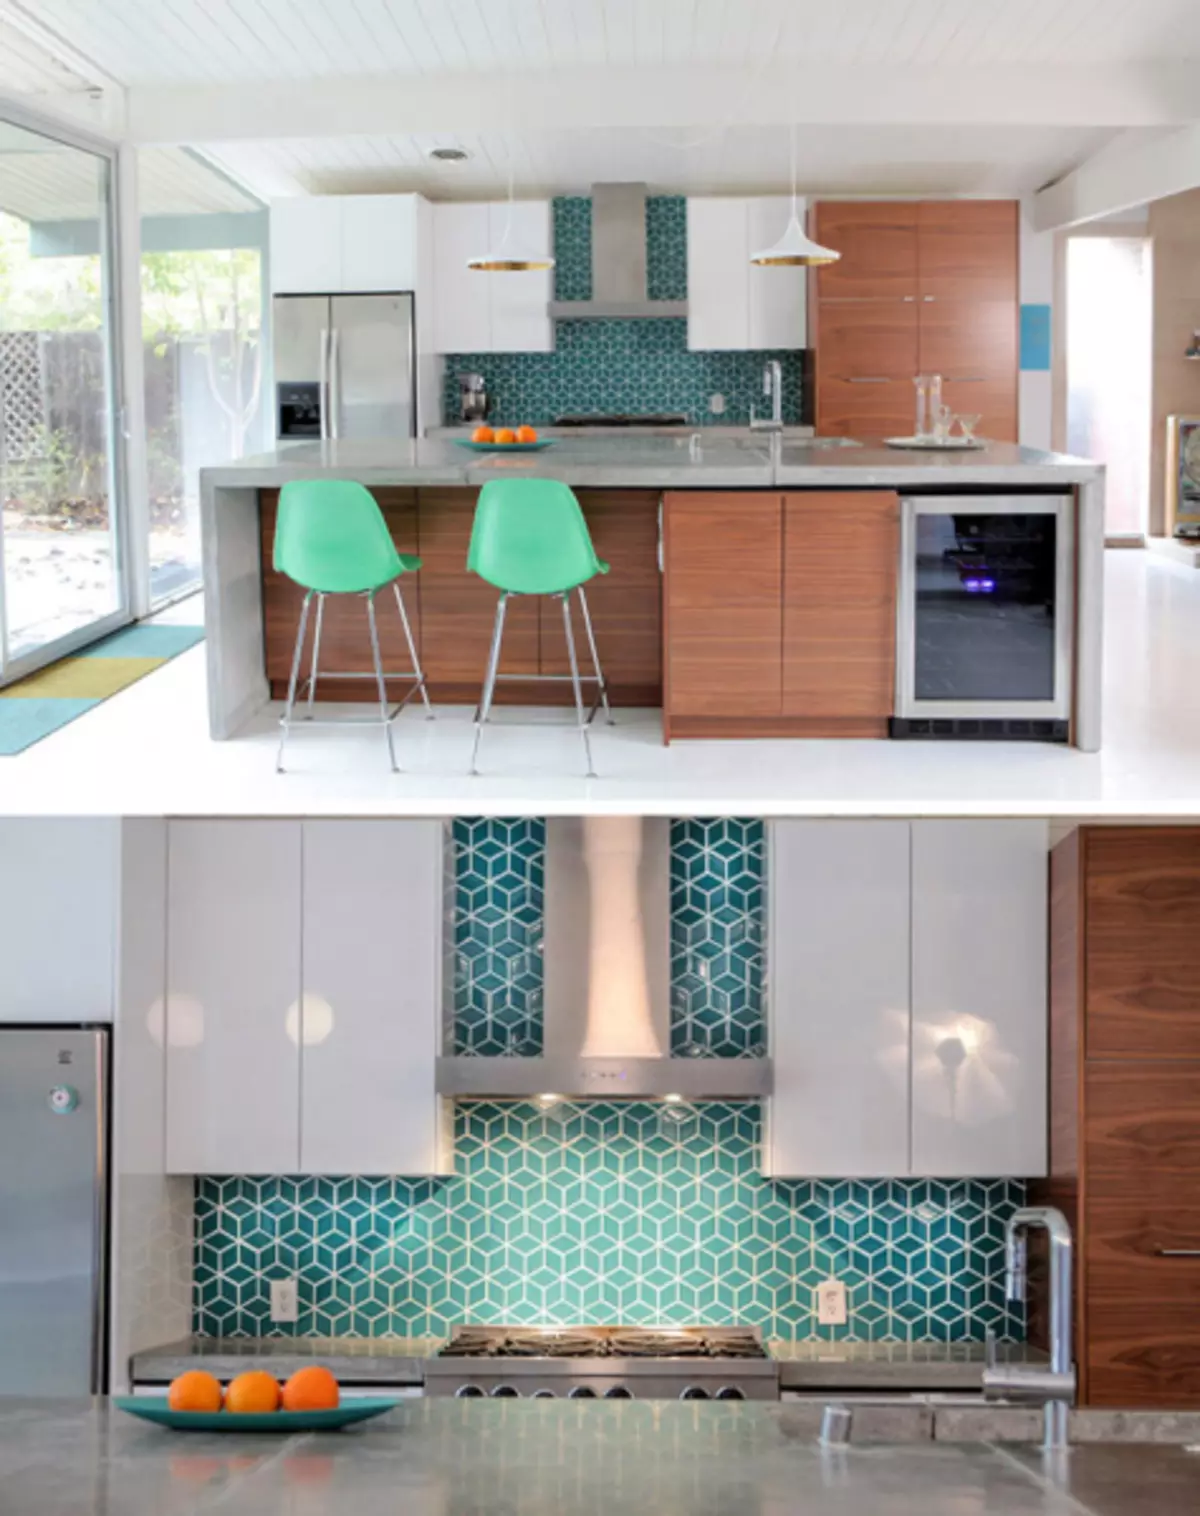 کاشی زیبا با الگوهای هندسی برای پیش بند آشپزخانه